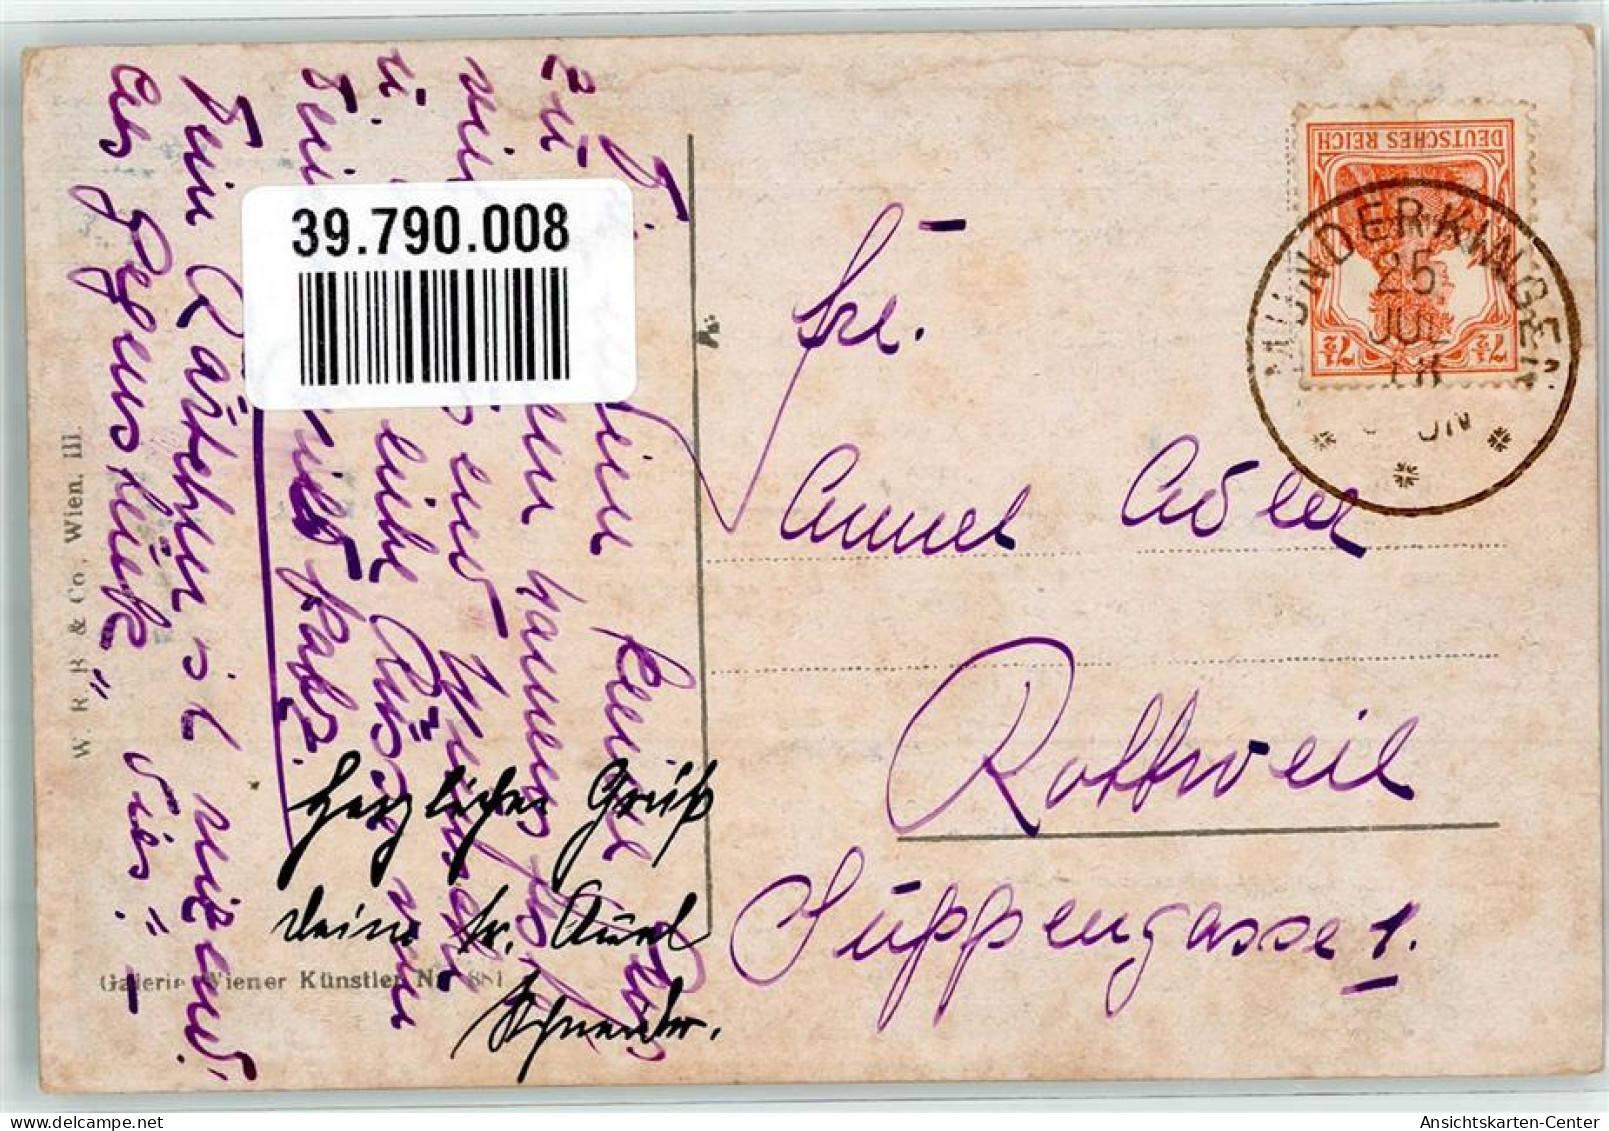 39790008 - Ein Schwerenoeter Galerie Wiener Kuenstler Nr. 881 W.R.B. U.Co. - Zatzka